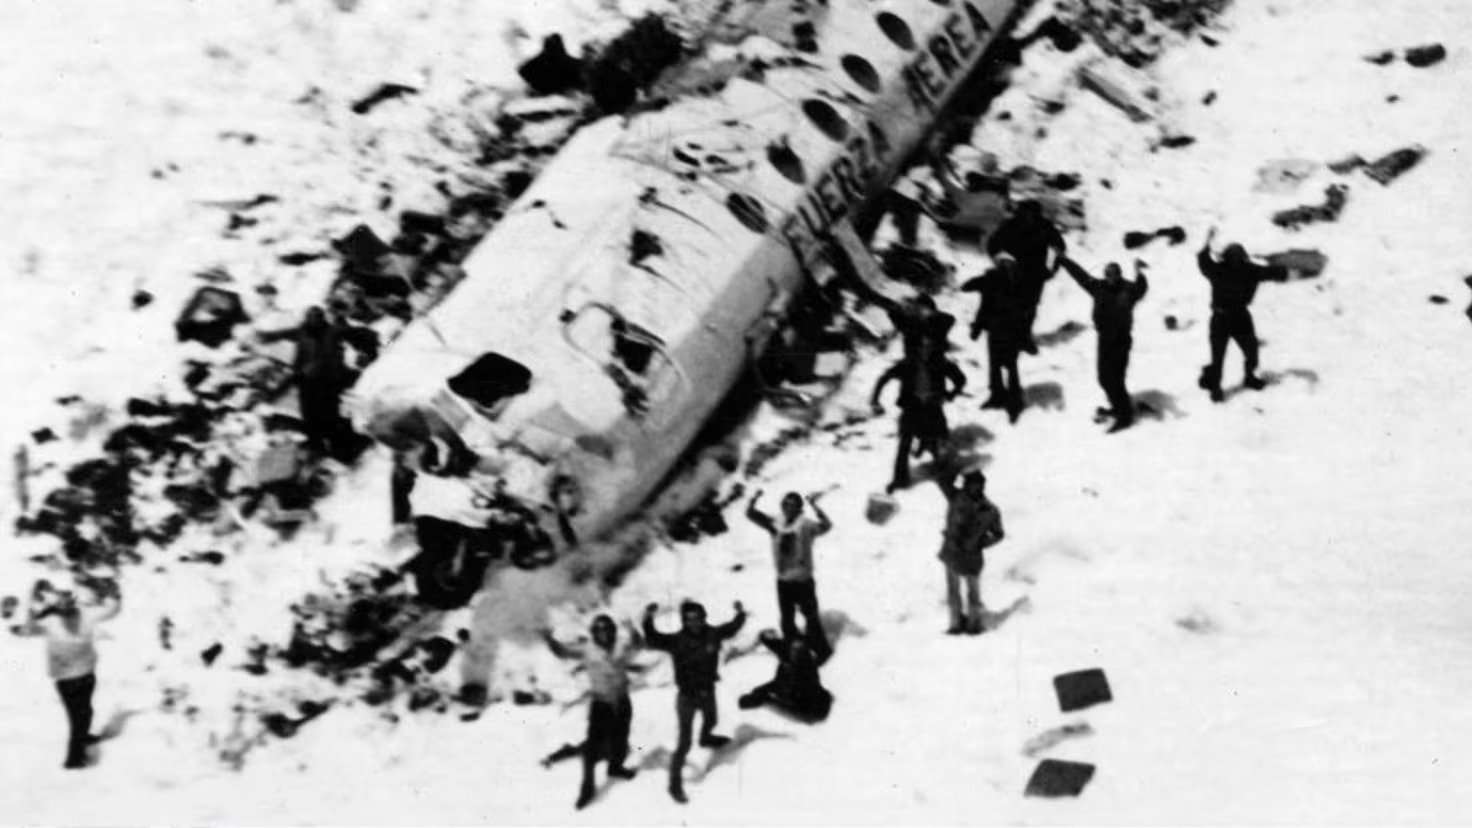 16 pasajeros sobrevivieron al accidente aéreo en Los Andes, en 1972.